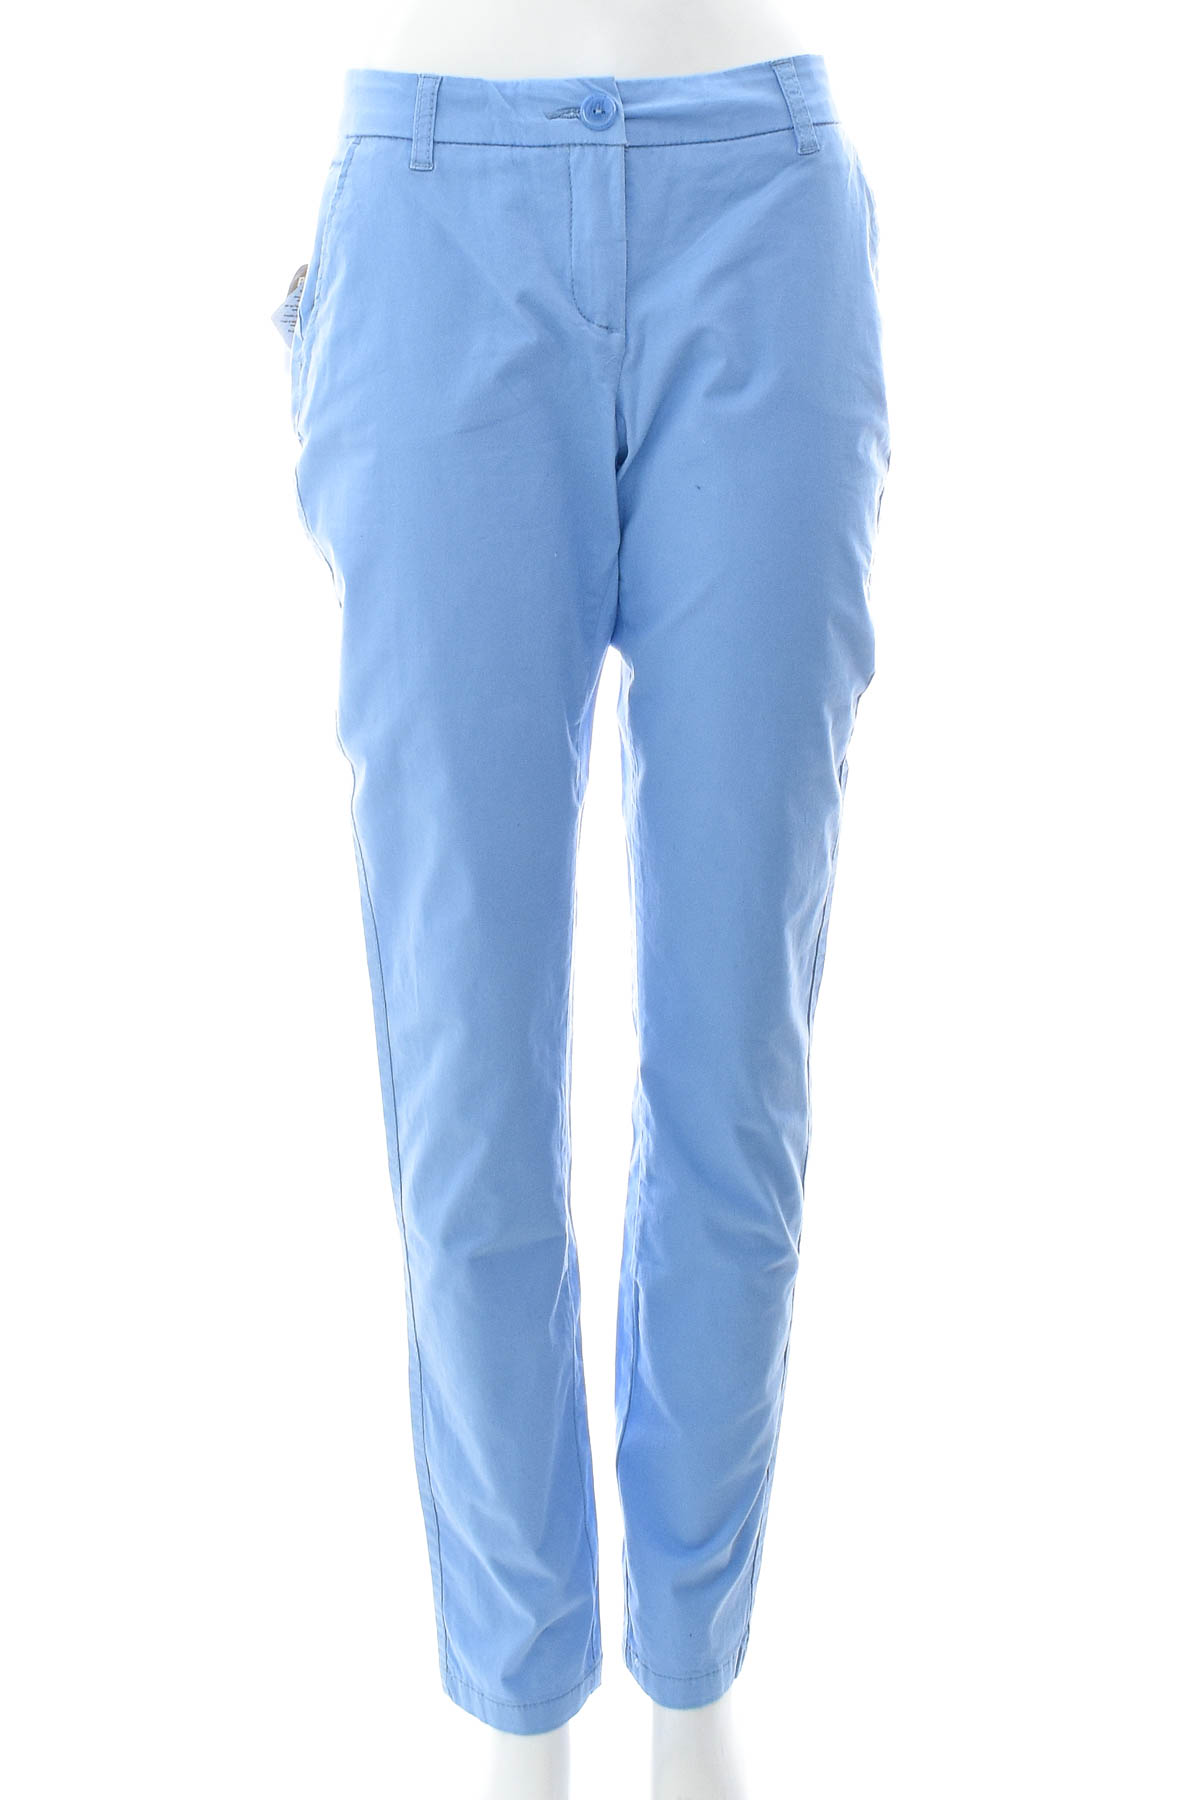 Women's trousers - Blue Motion - 0